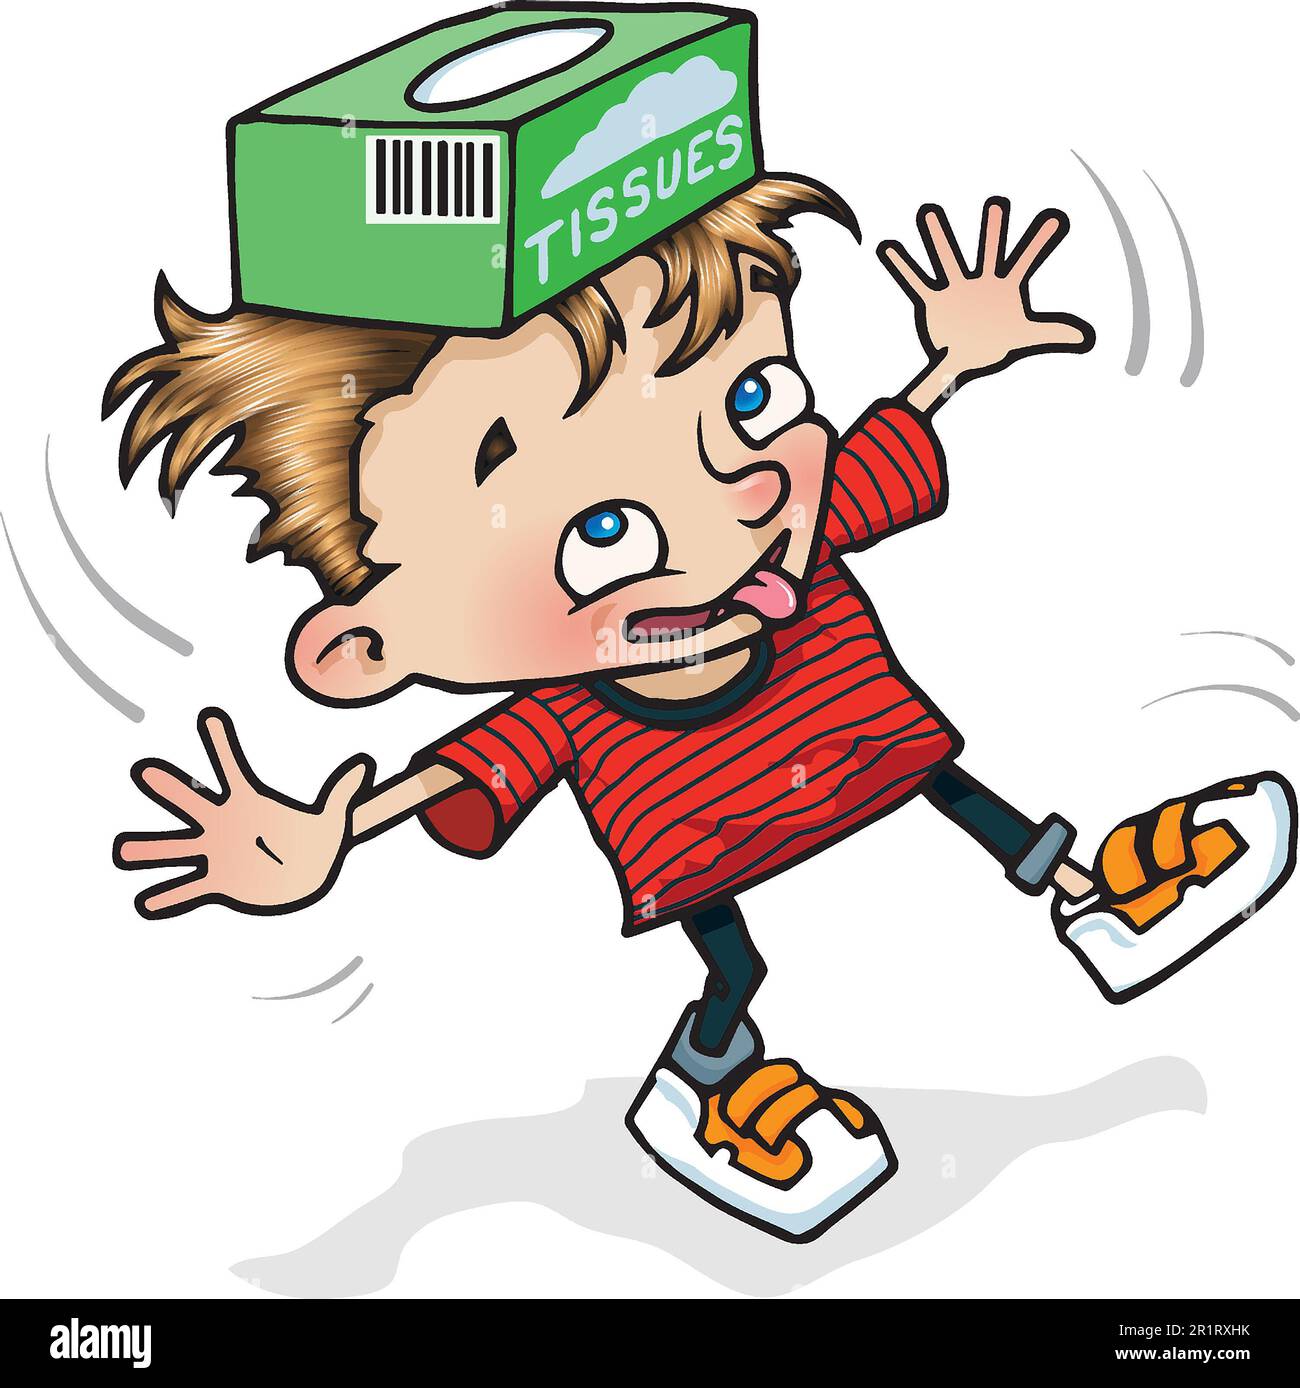 Ilustración de dibujos animados de arte de niño joven, de 5 a 7 años, equilibrando una caja en su cabeza, aprendiendo a través del juego, el movimiento, la agilidad, la coordinación, control de la carrocería. Foto de stock